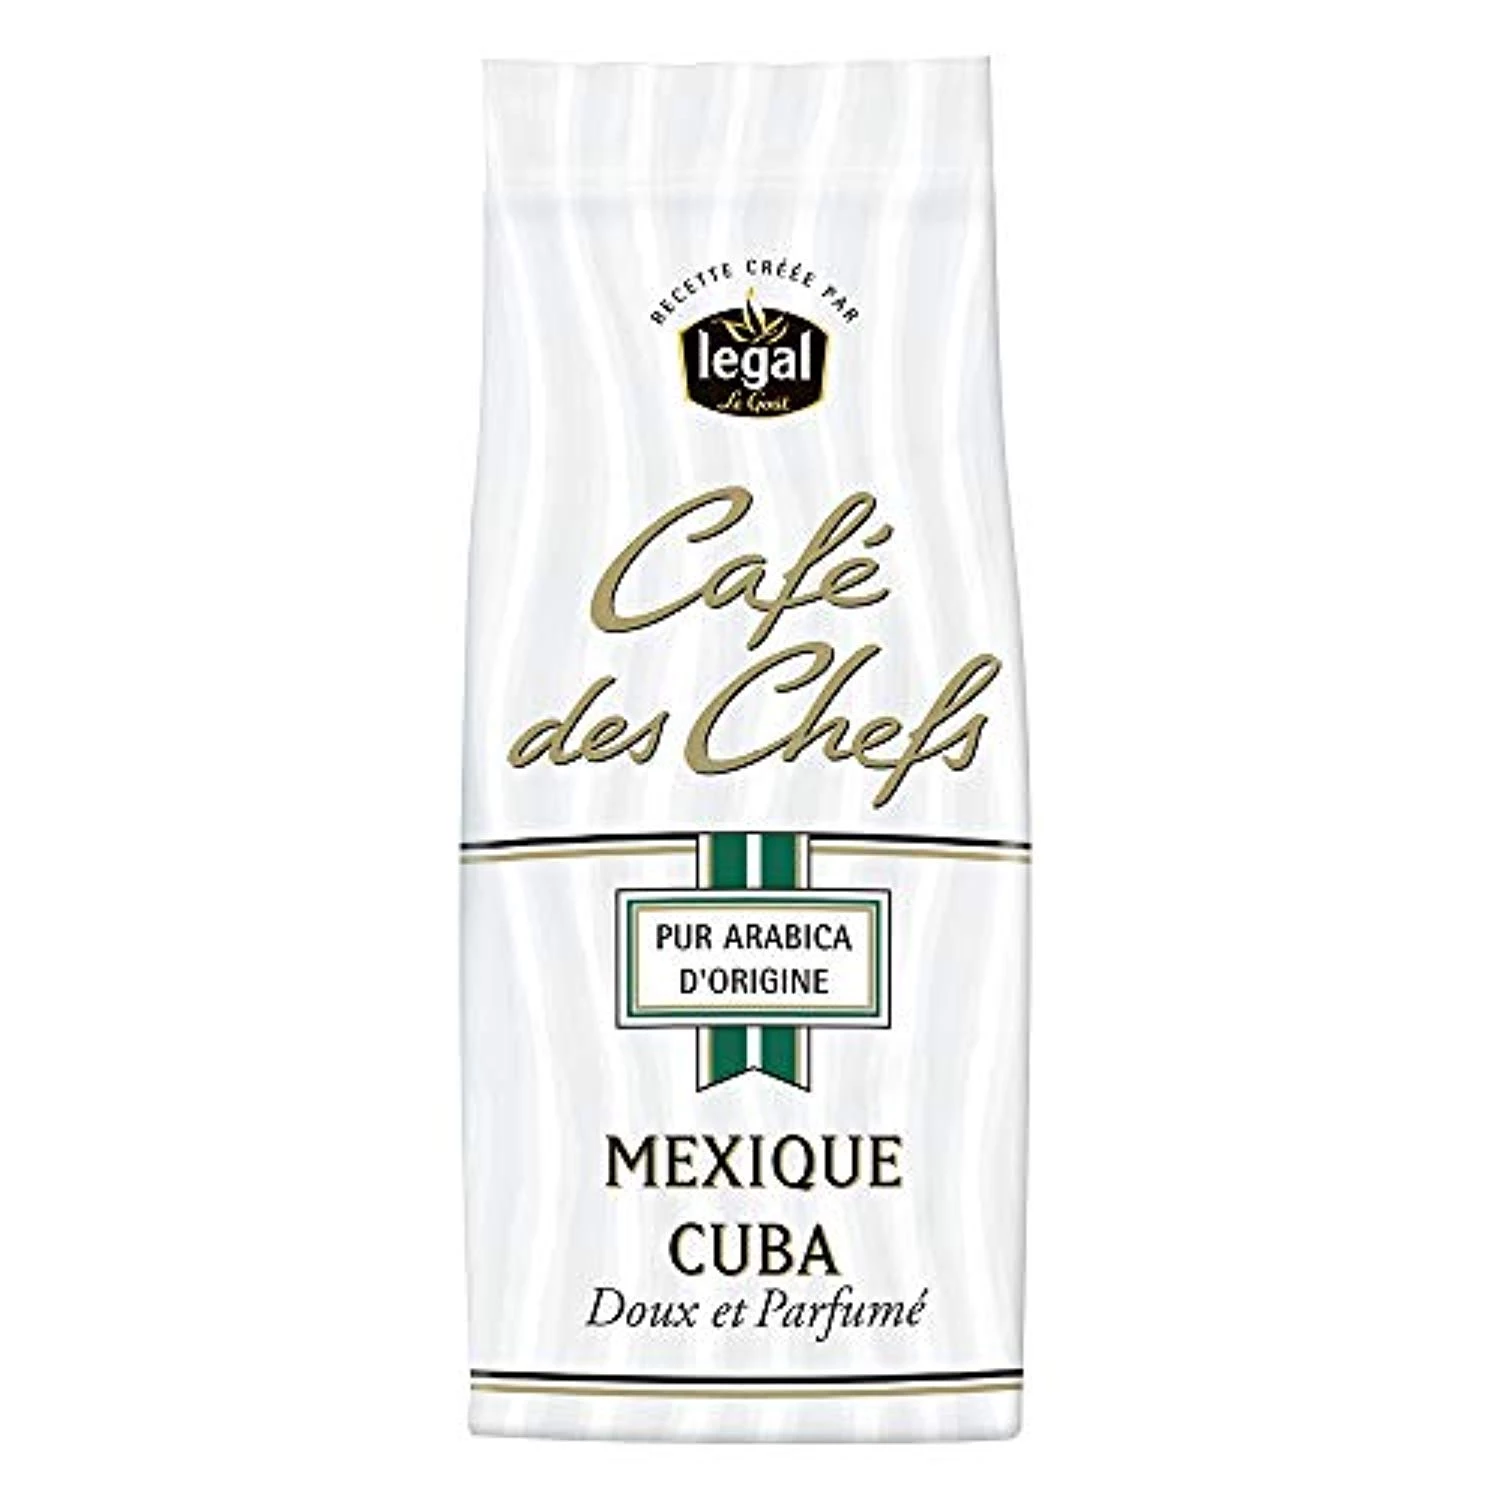 Pure Arabica koffie uit Mexico en Cuba; Café des Chefs 250g - LEGAL